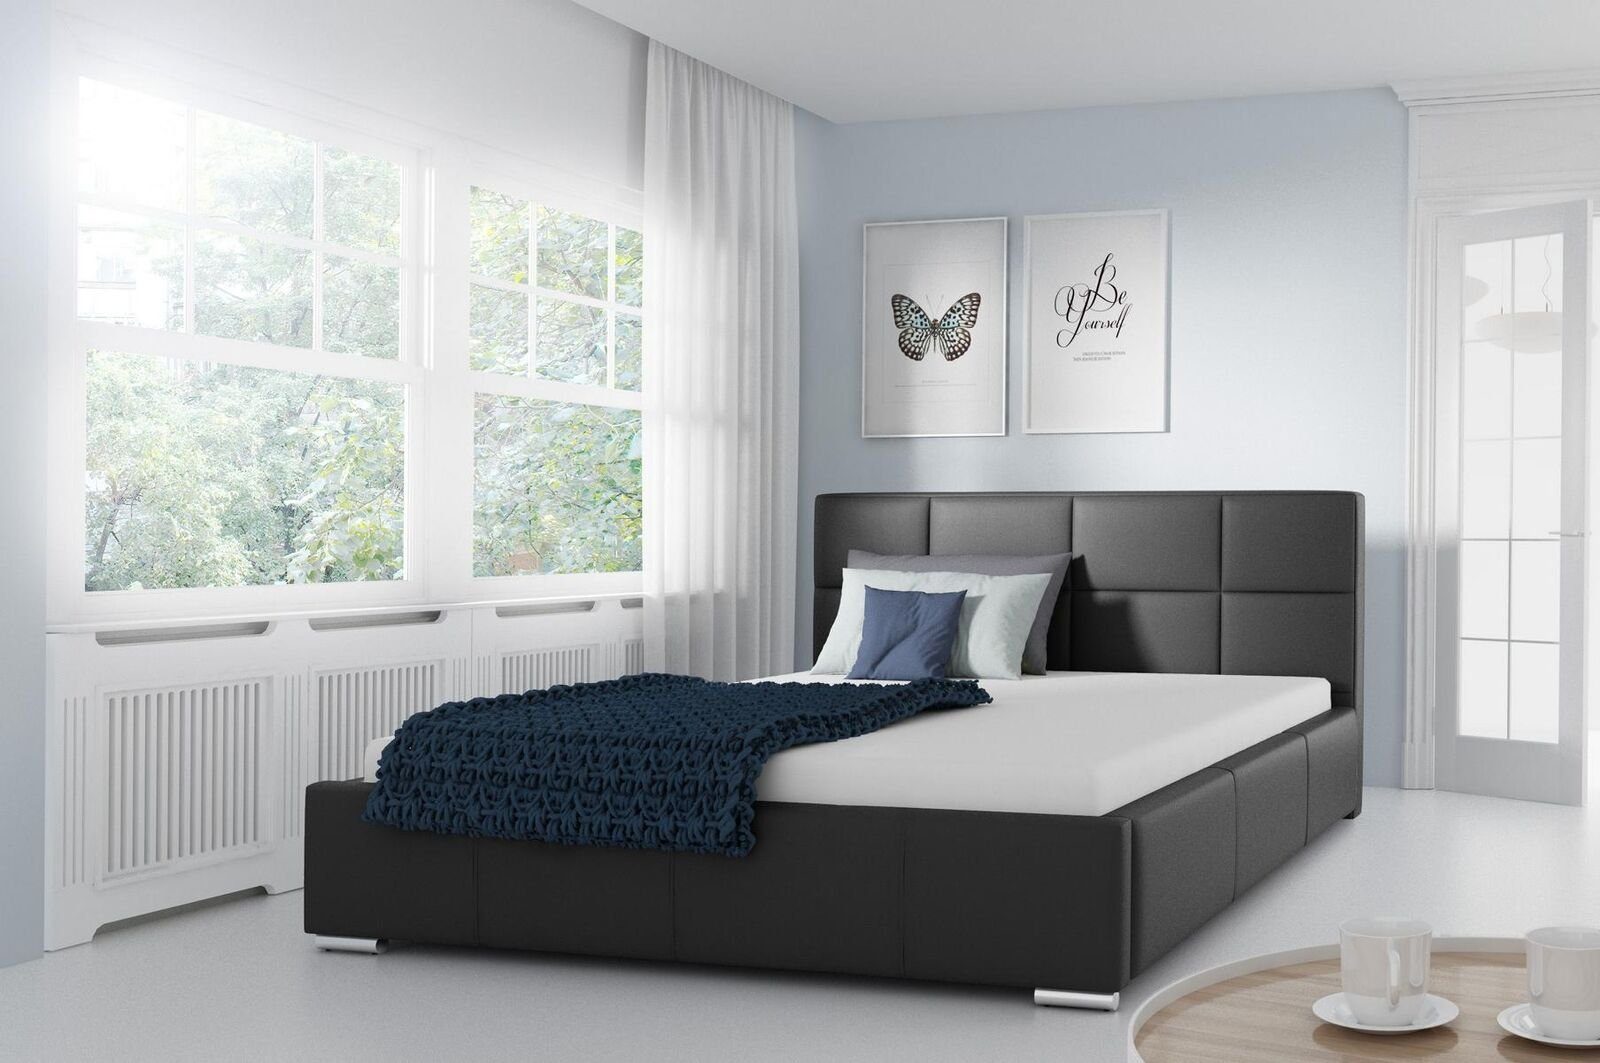 JVmoebel Lederbett, Doppel Bett Gepolsterte Design Luxus Möbel 200x200 Bettrahmen Schwarz